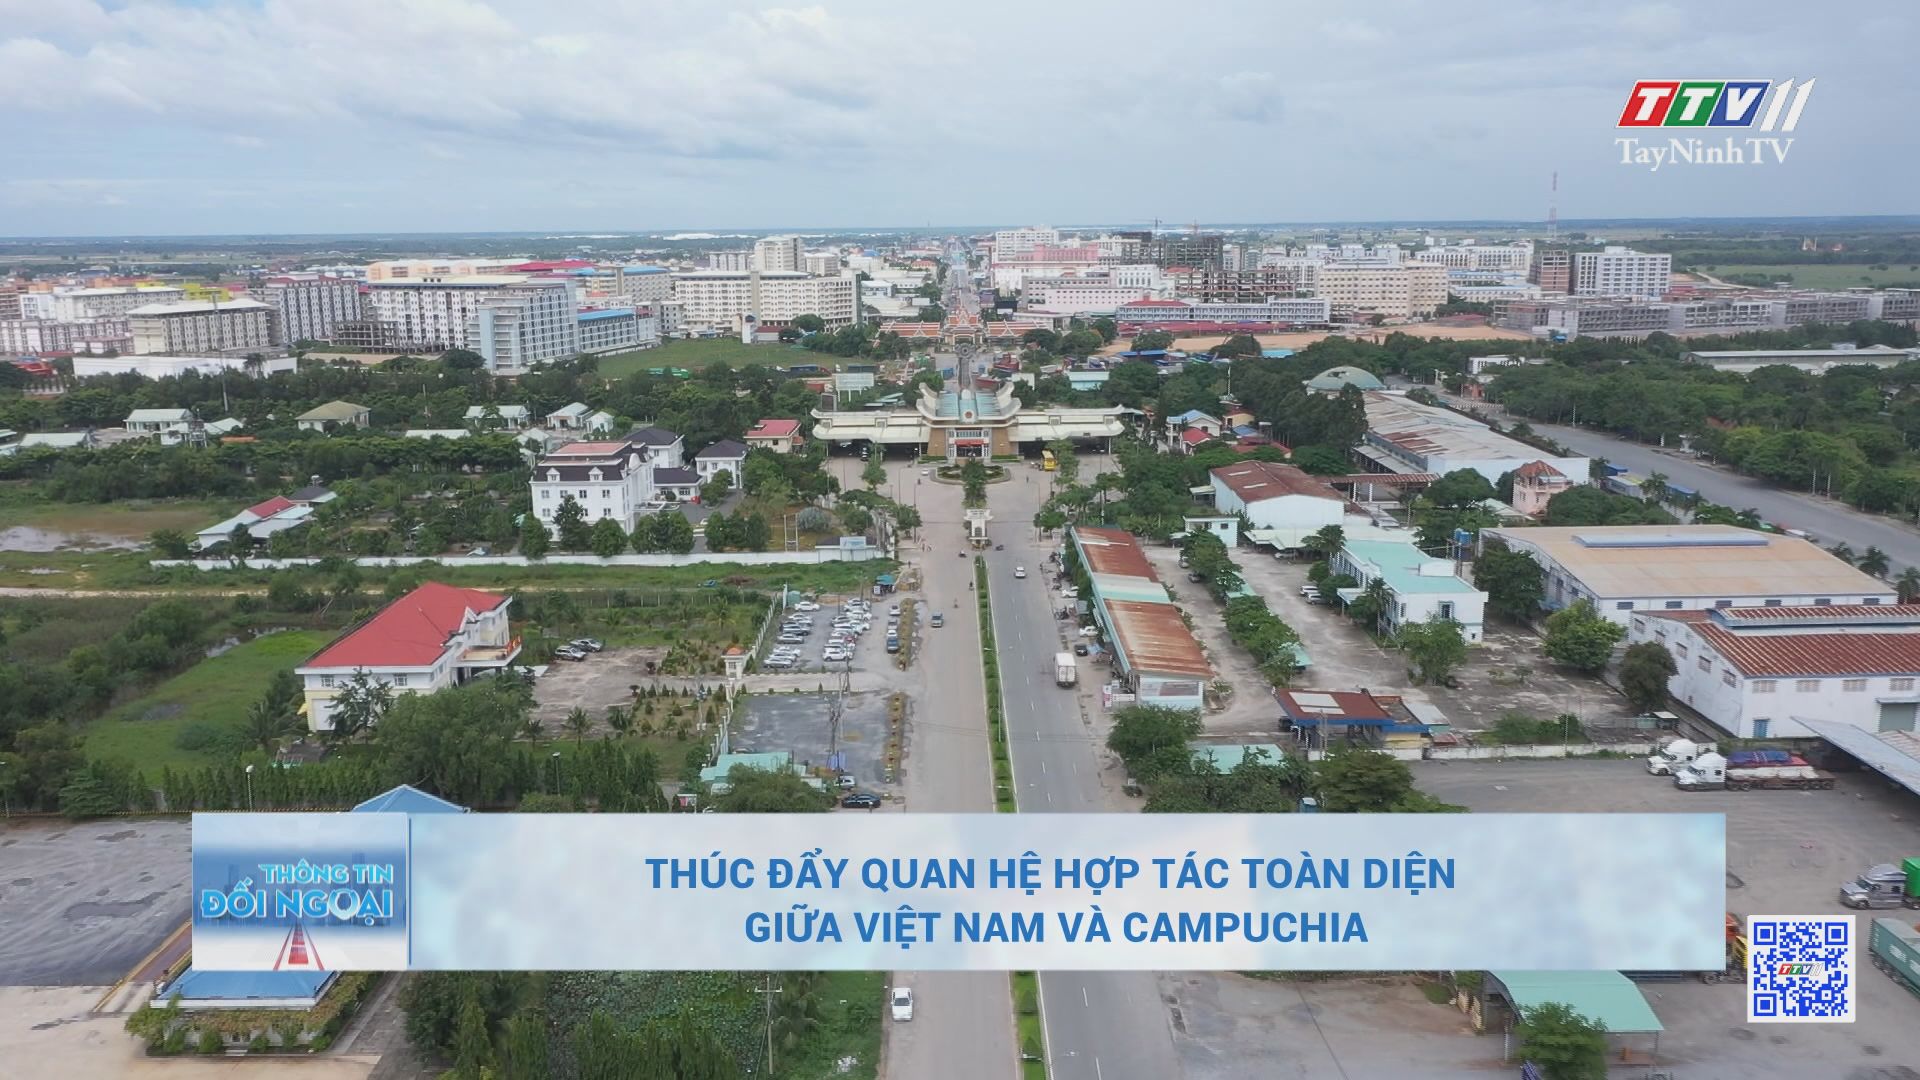 Thúc đẩy quan hệ hợp tác toàn diện giữa Việt Nam và Campuchia | BẢN TIN THÔNG TIN ĐỐI NGOẠI | TayNinhTV